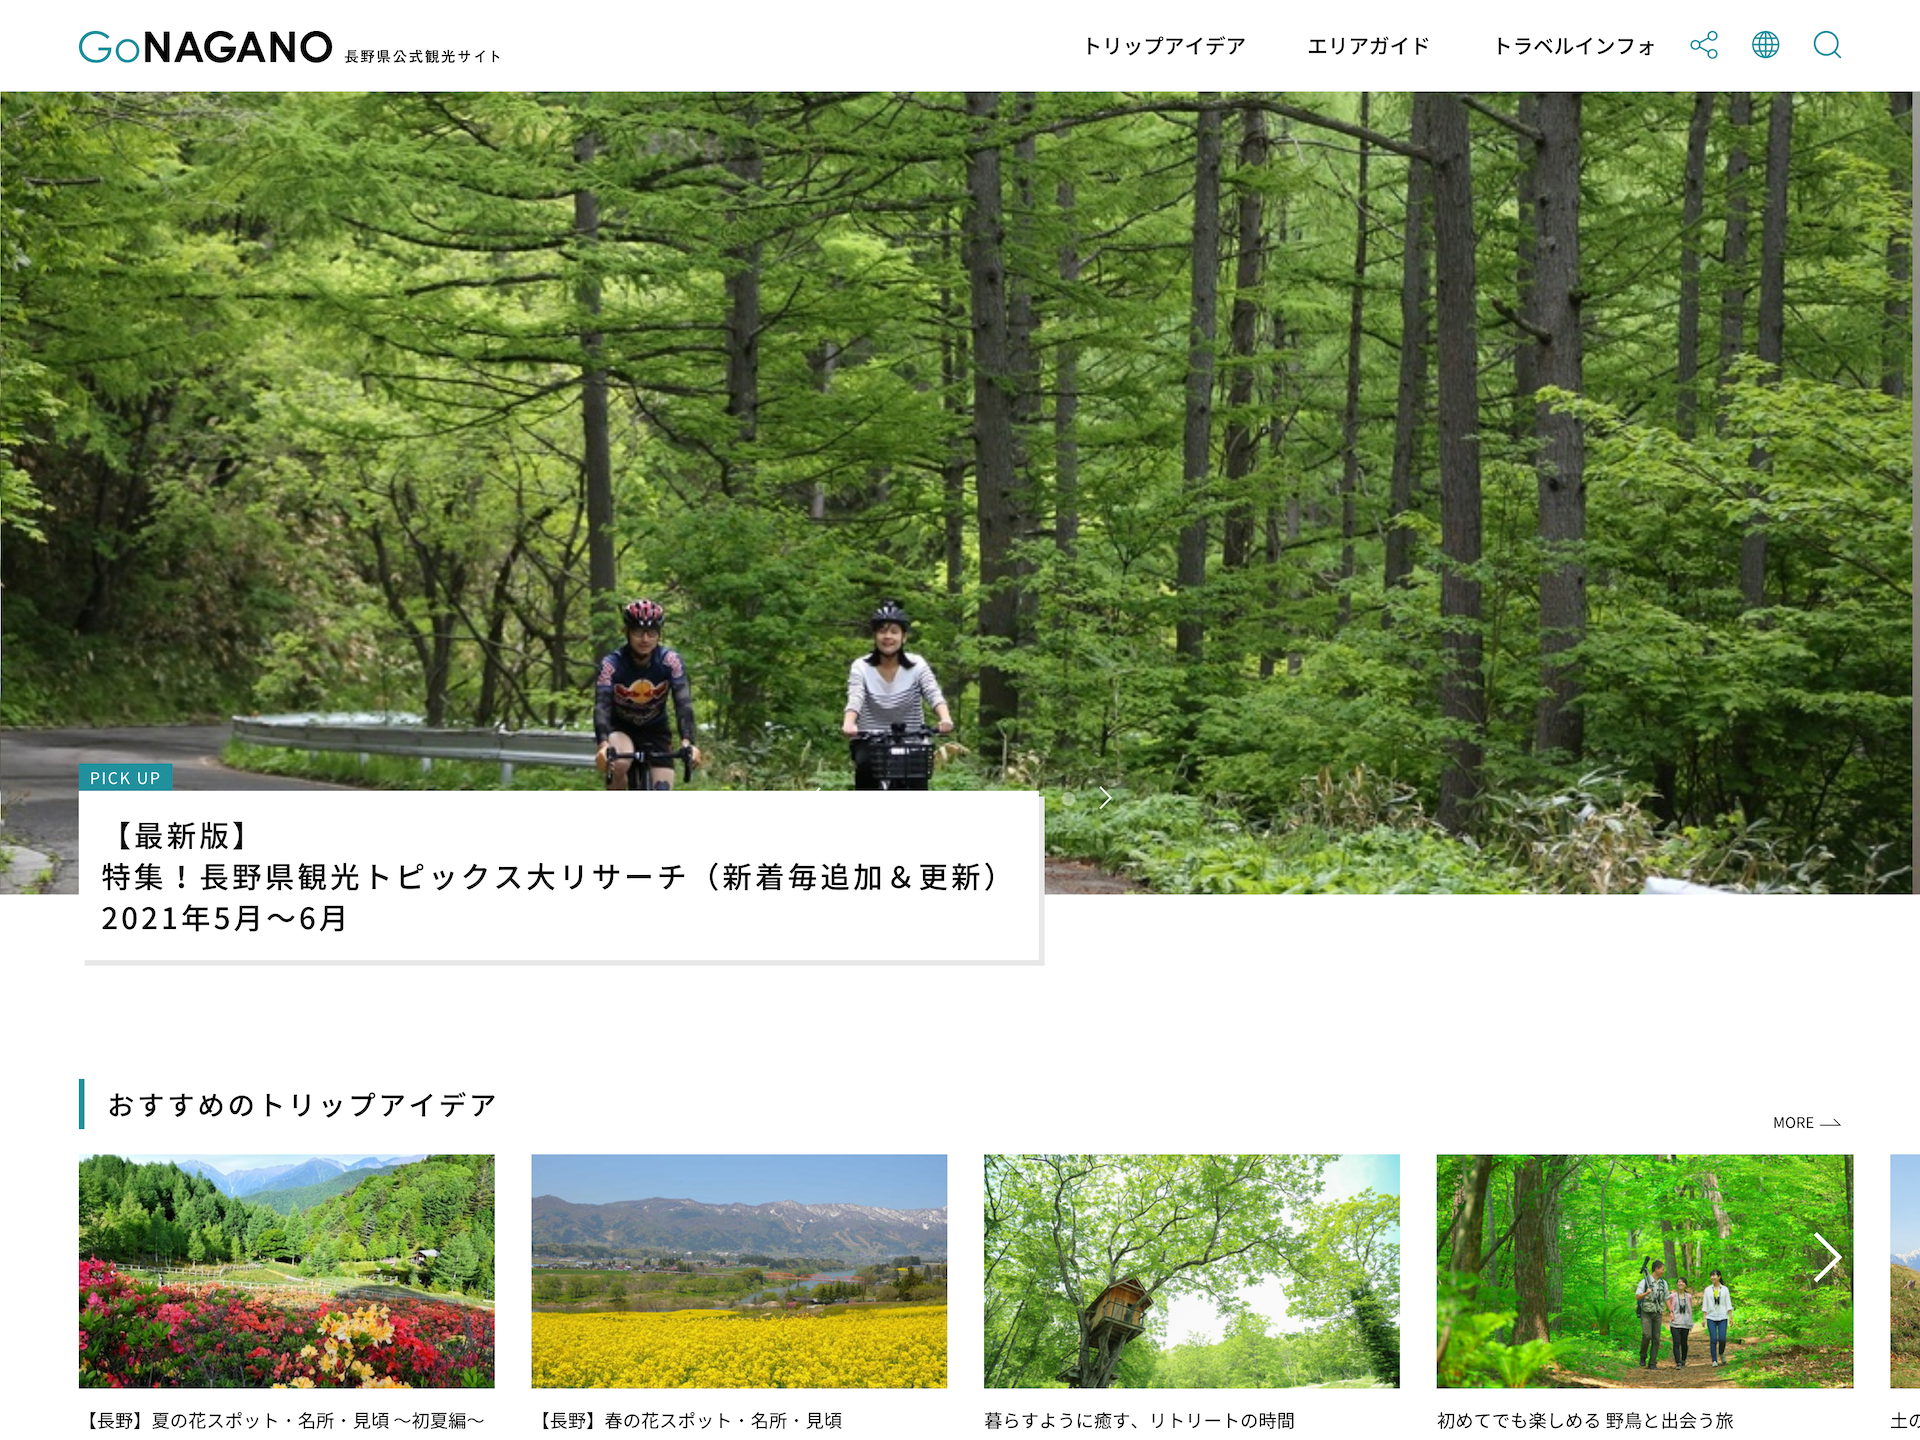 Go NAGANO 長野県公式観光サイト